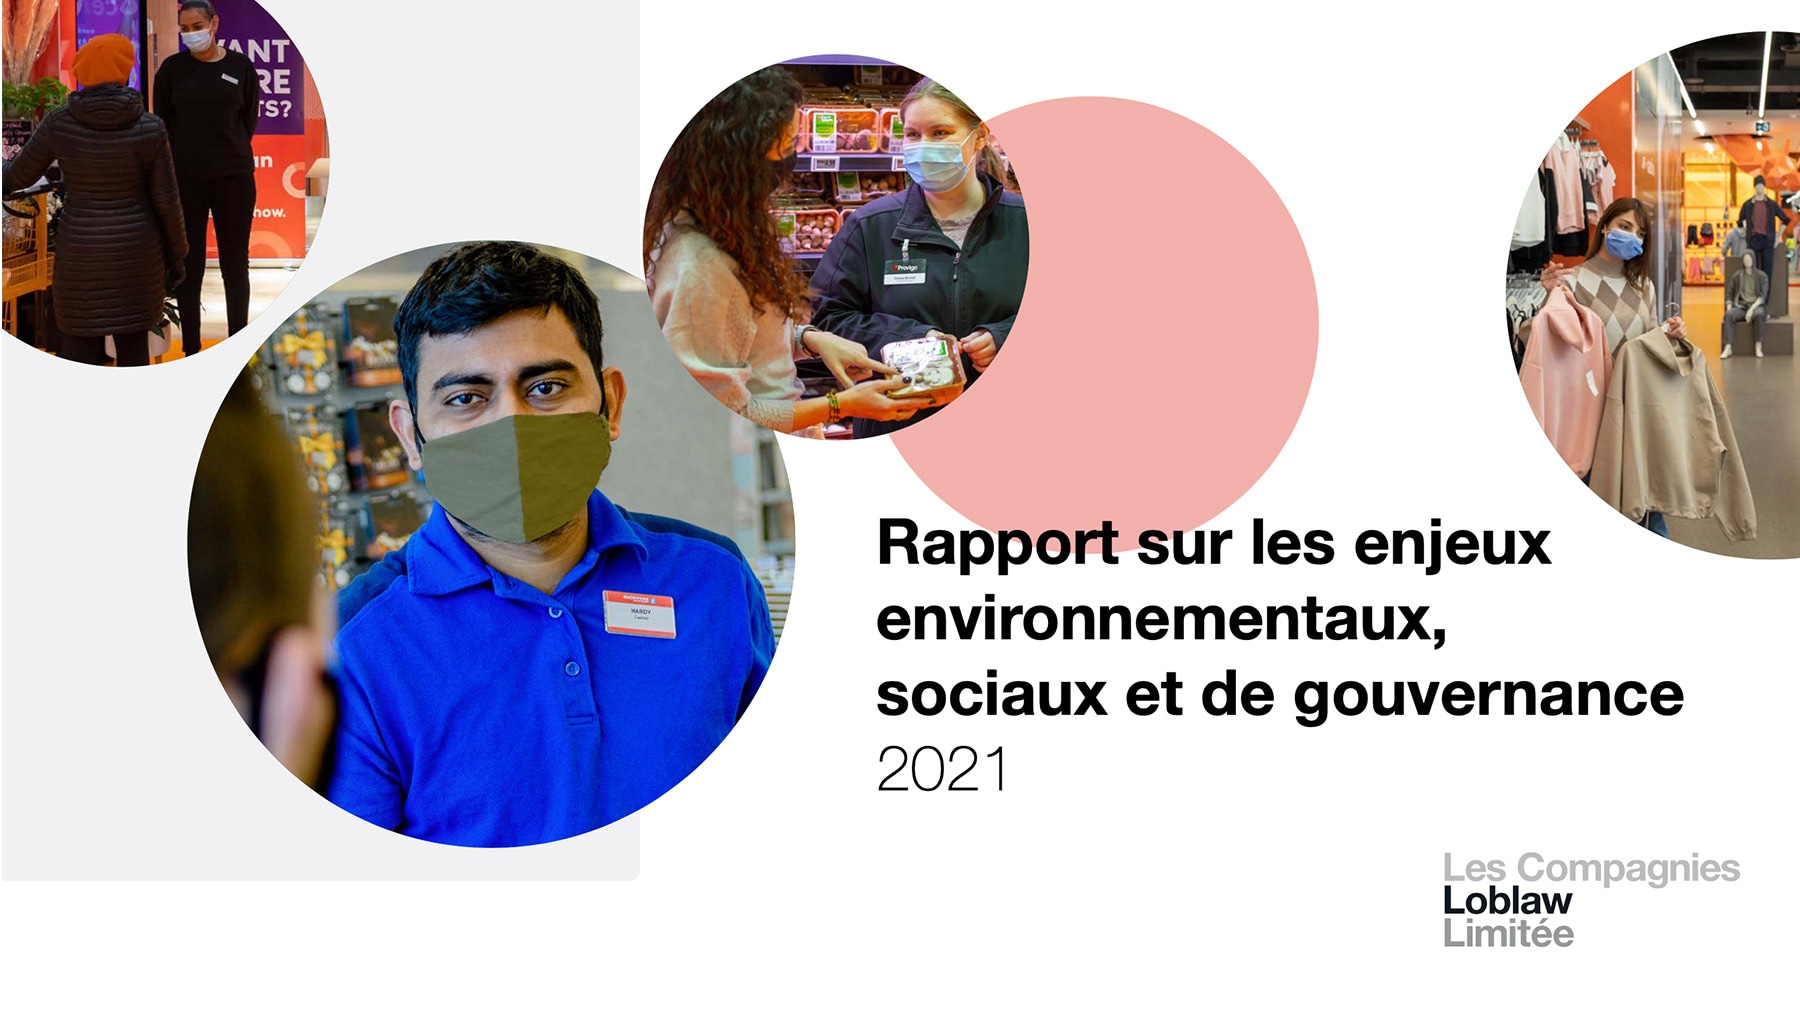 ESG Report Cover 2021 